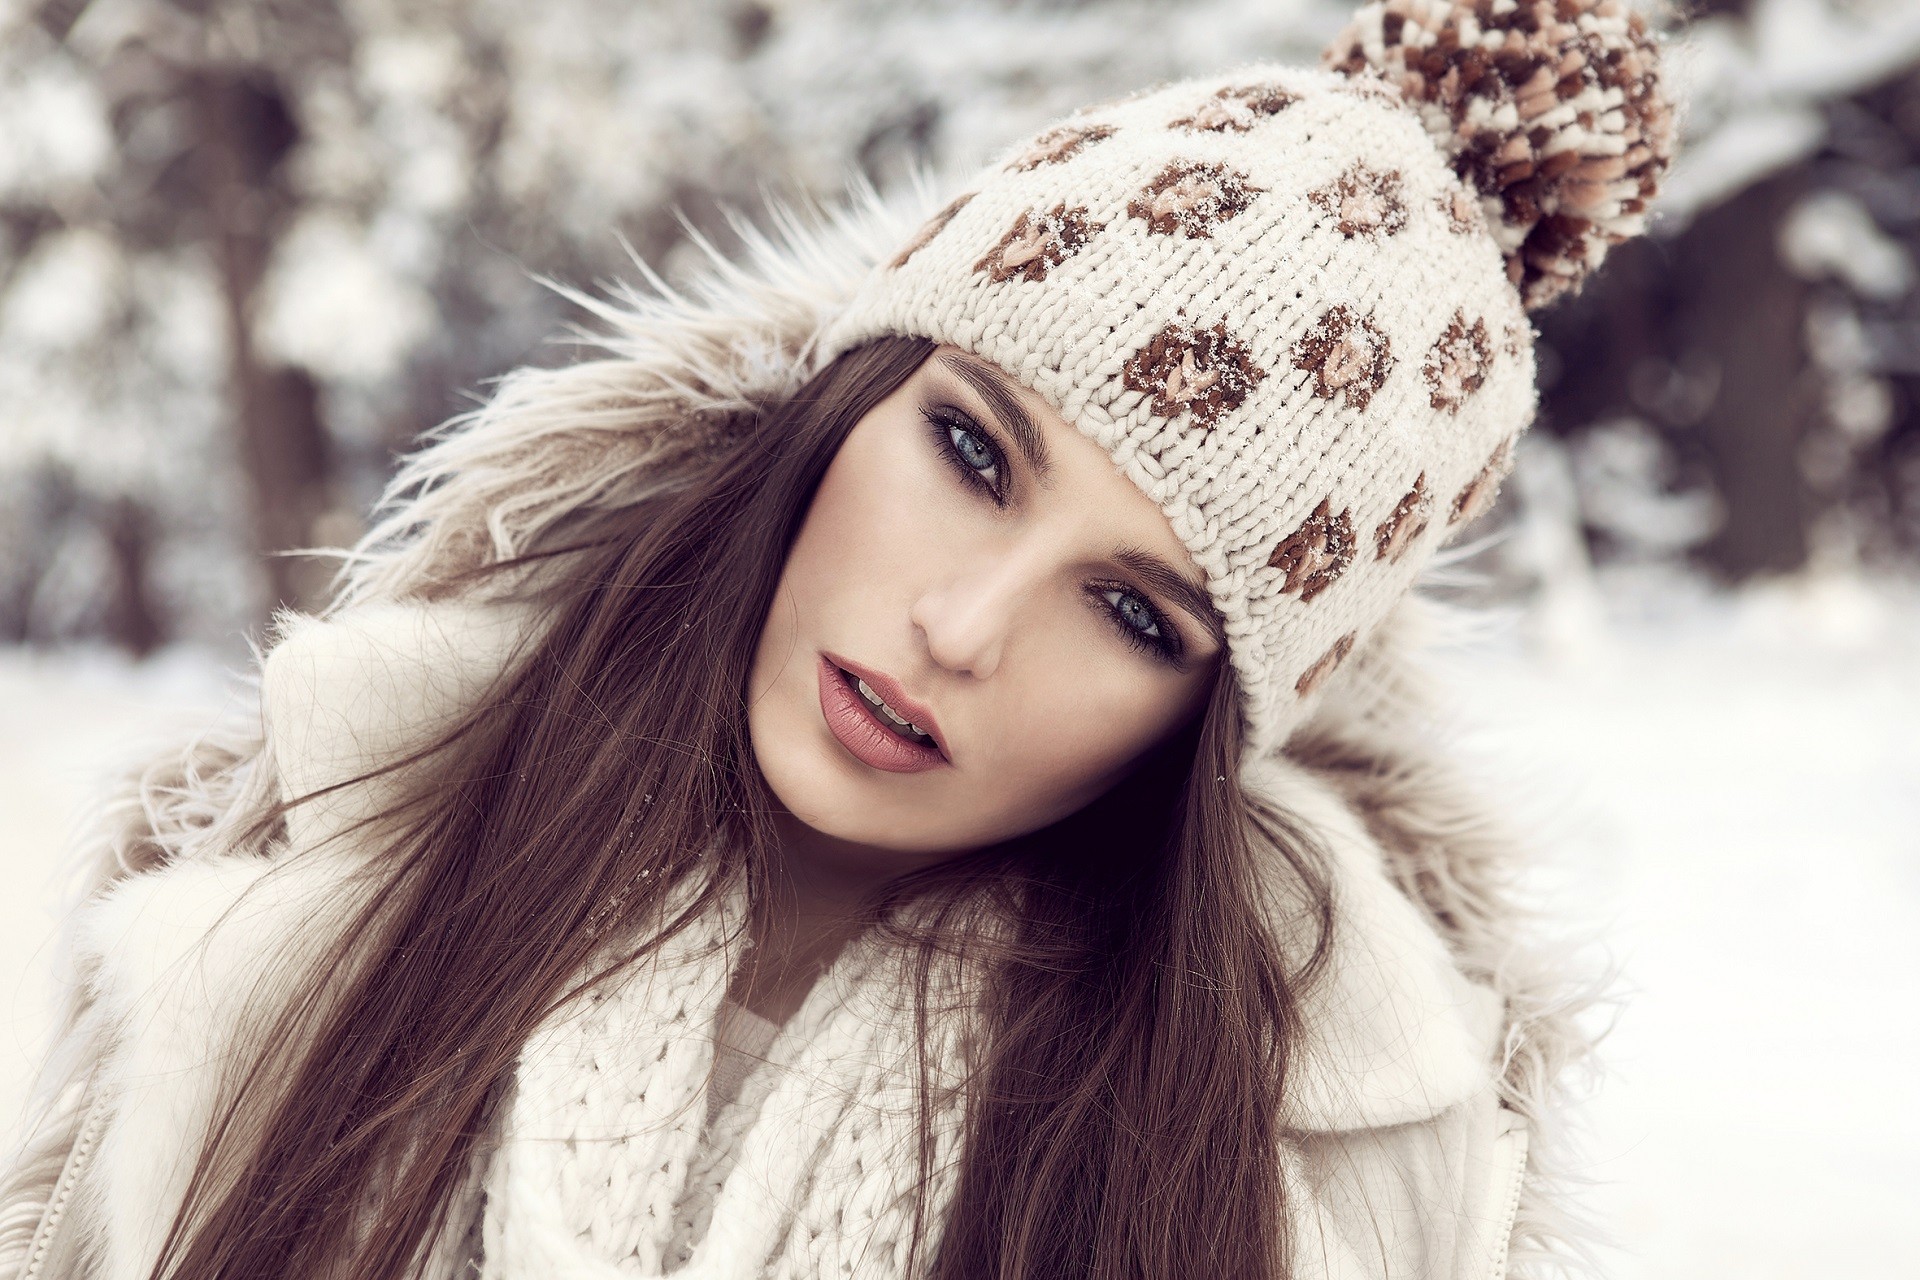 7 Best Skin Lightening Tips for Winter